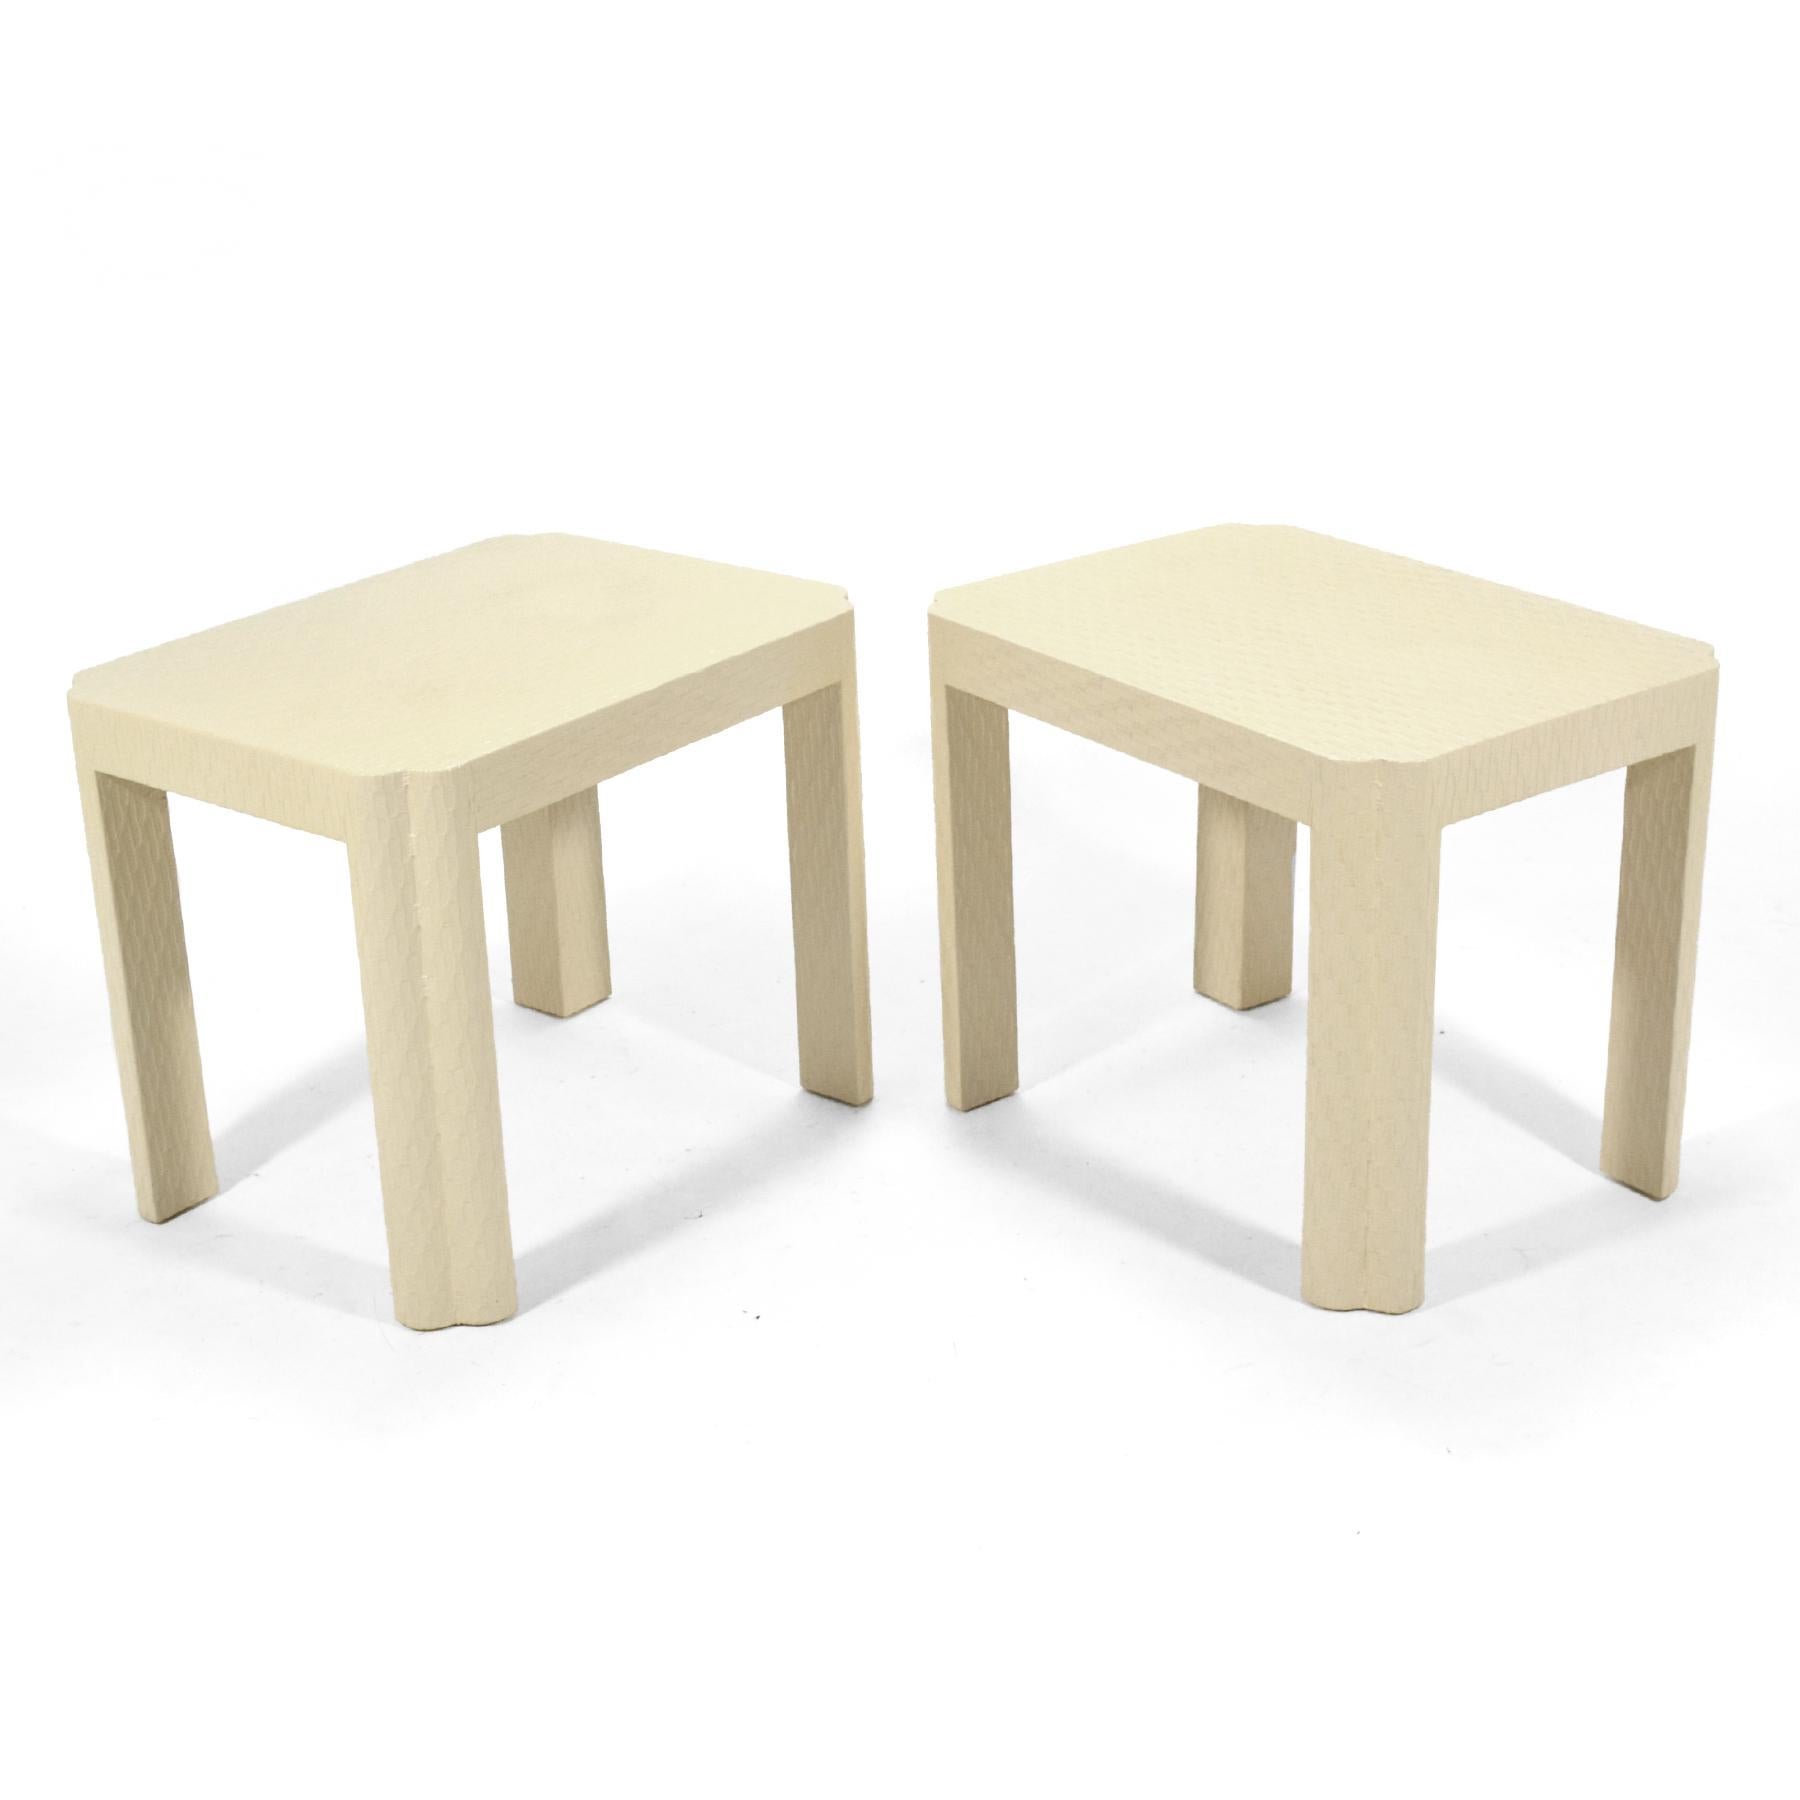 Cette paire de belles tables d'appoint est très similaire aux dessins de Karl Springer. Ils sont enveloppés d'un tissu texturé, peints d'une couleur ivoire chaude, et ont des coins/jambes sculptés. Peut-être fabriqués par Baker Furniture Co., ils ne